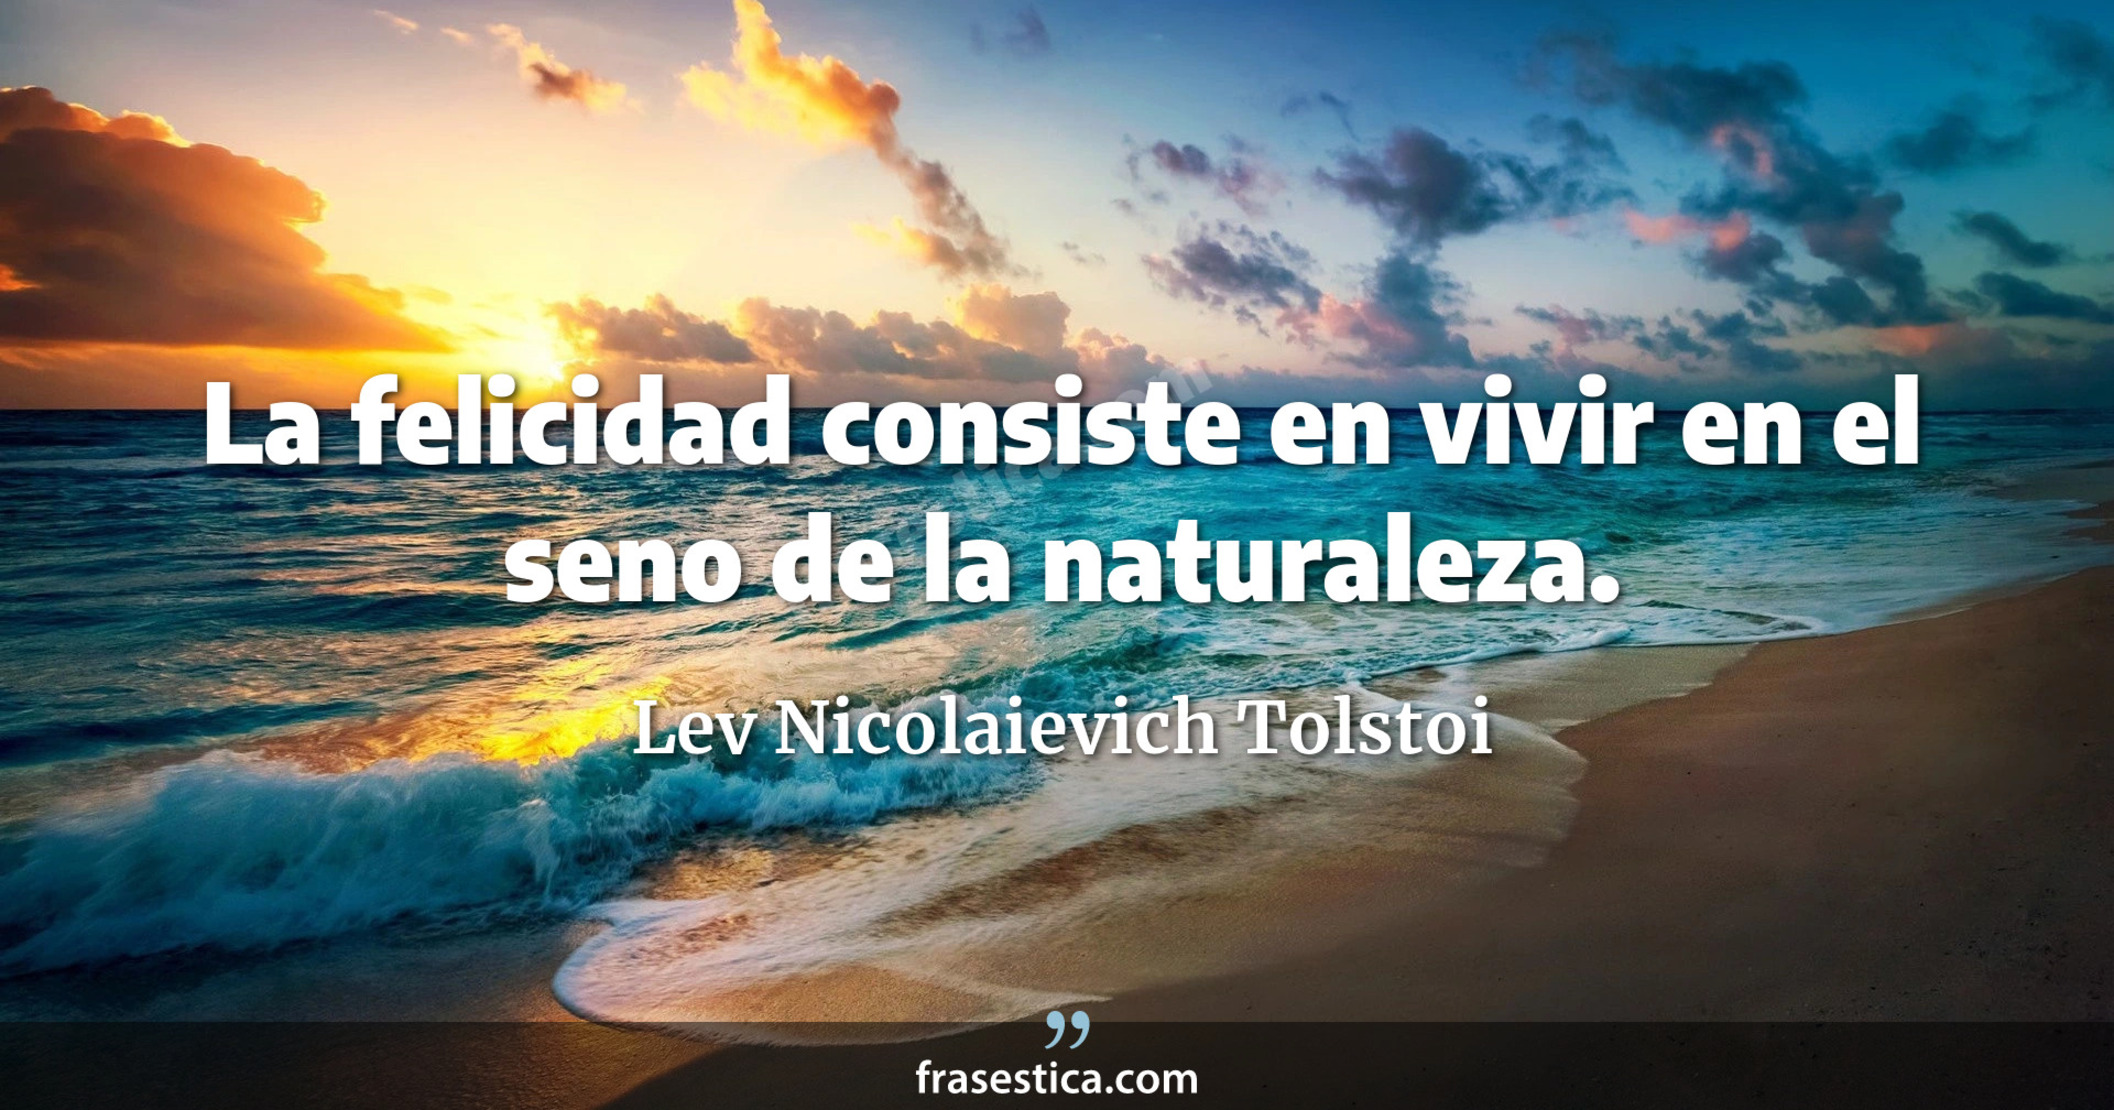 La felicidad consiste en vivir en el seno de la naturaleza. - Lev Nicolaievich Tolstoi